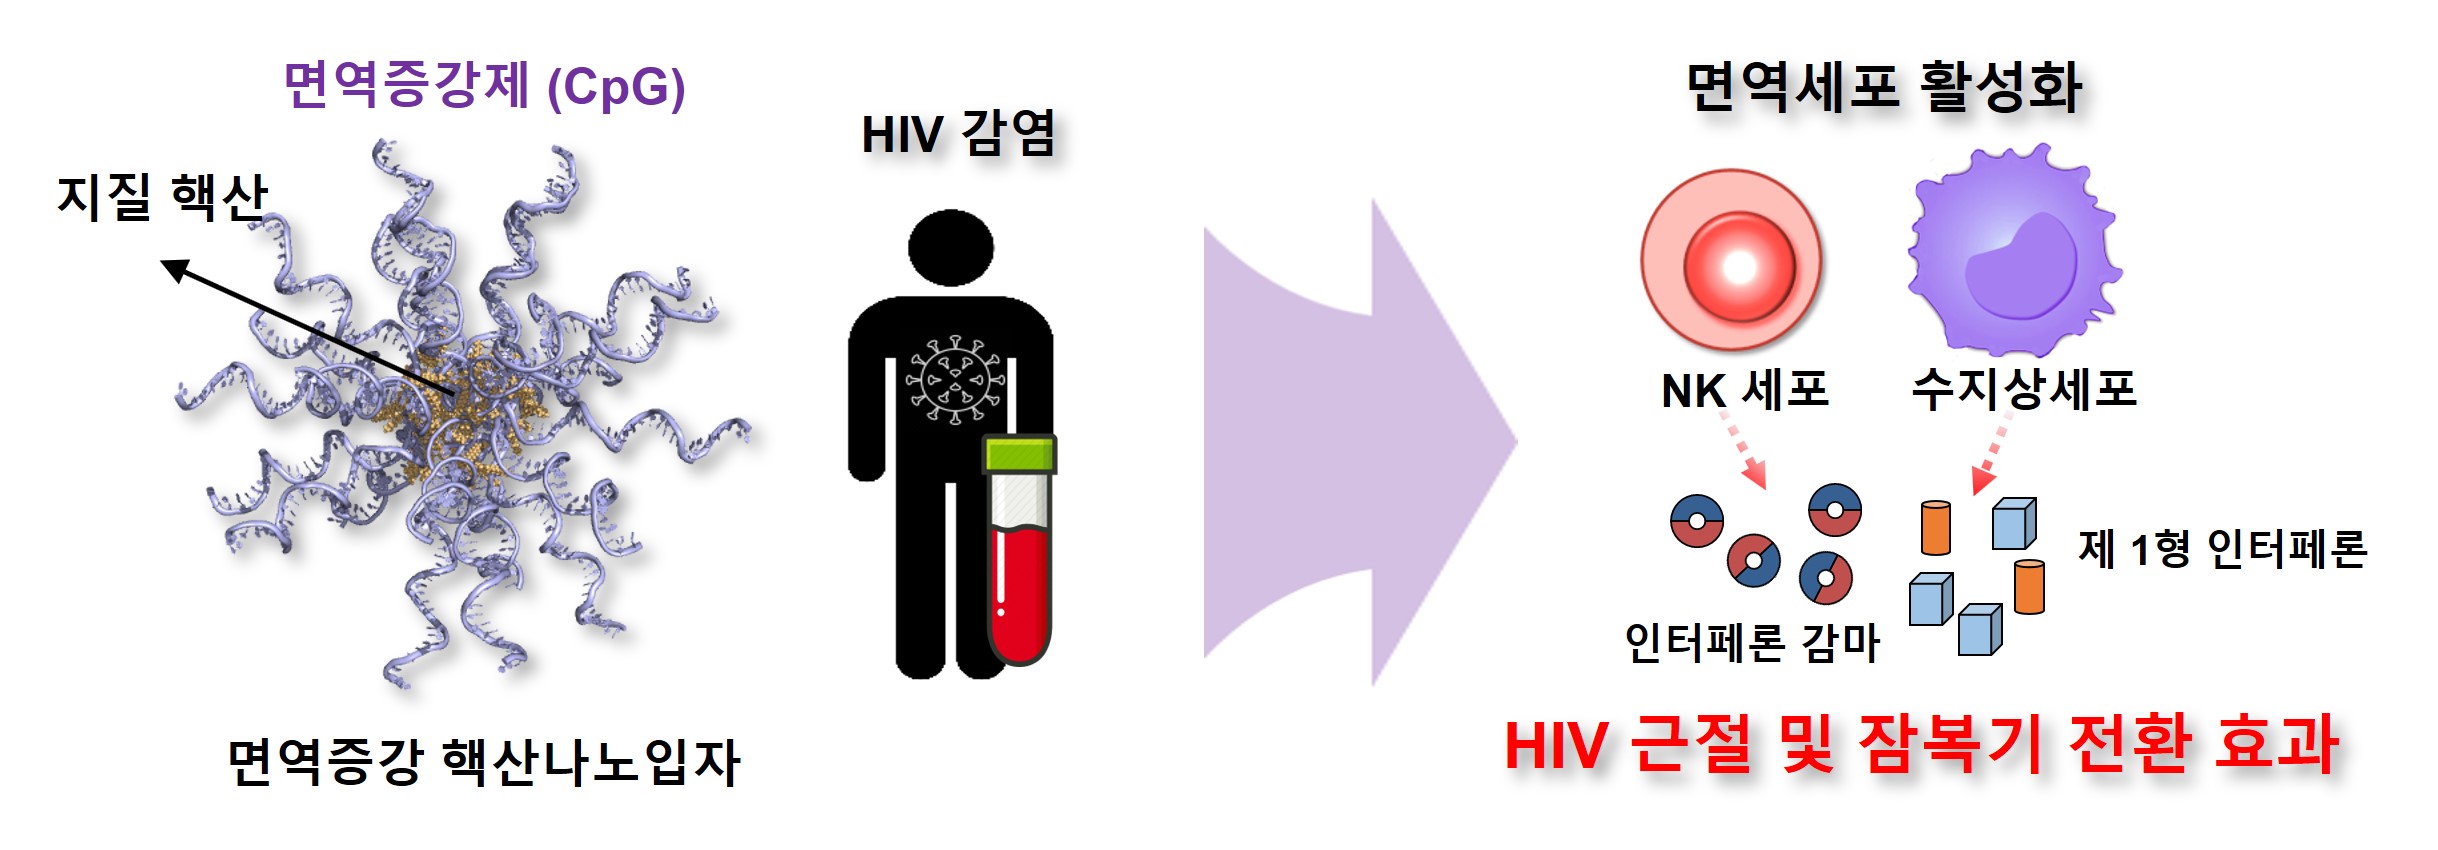 2 면역증강 핵산나노입자의 HIV 대항 면역활성 전략 모식도